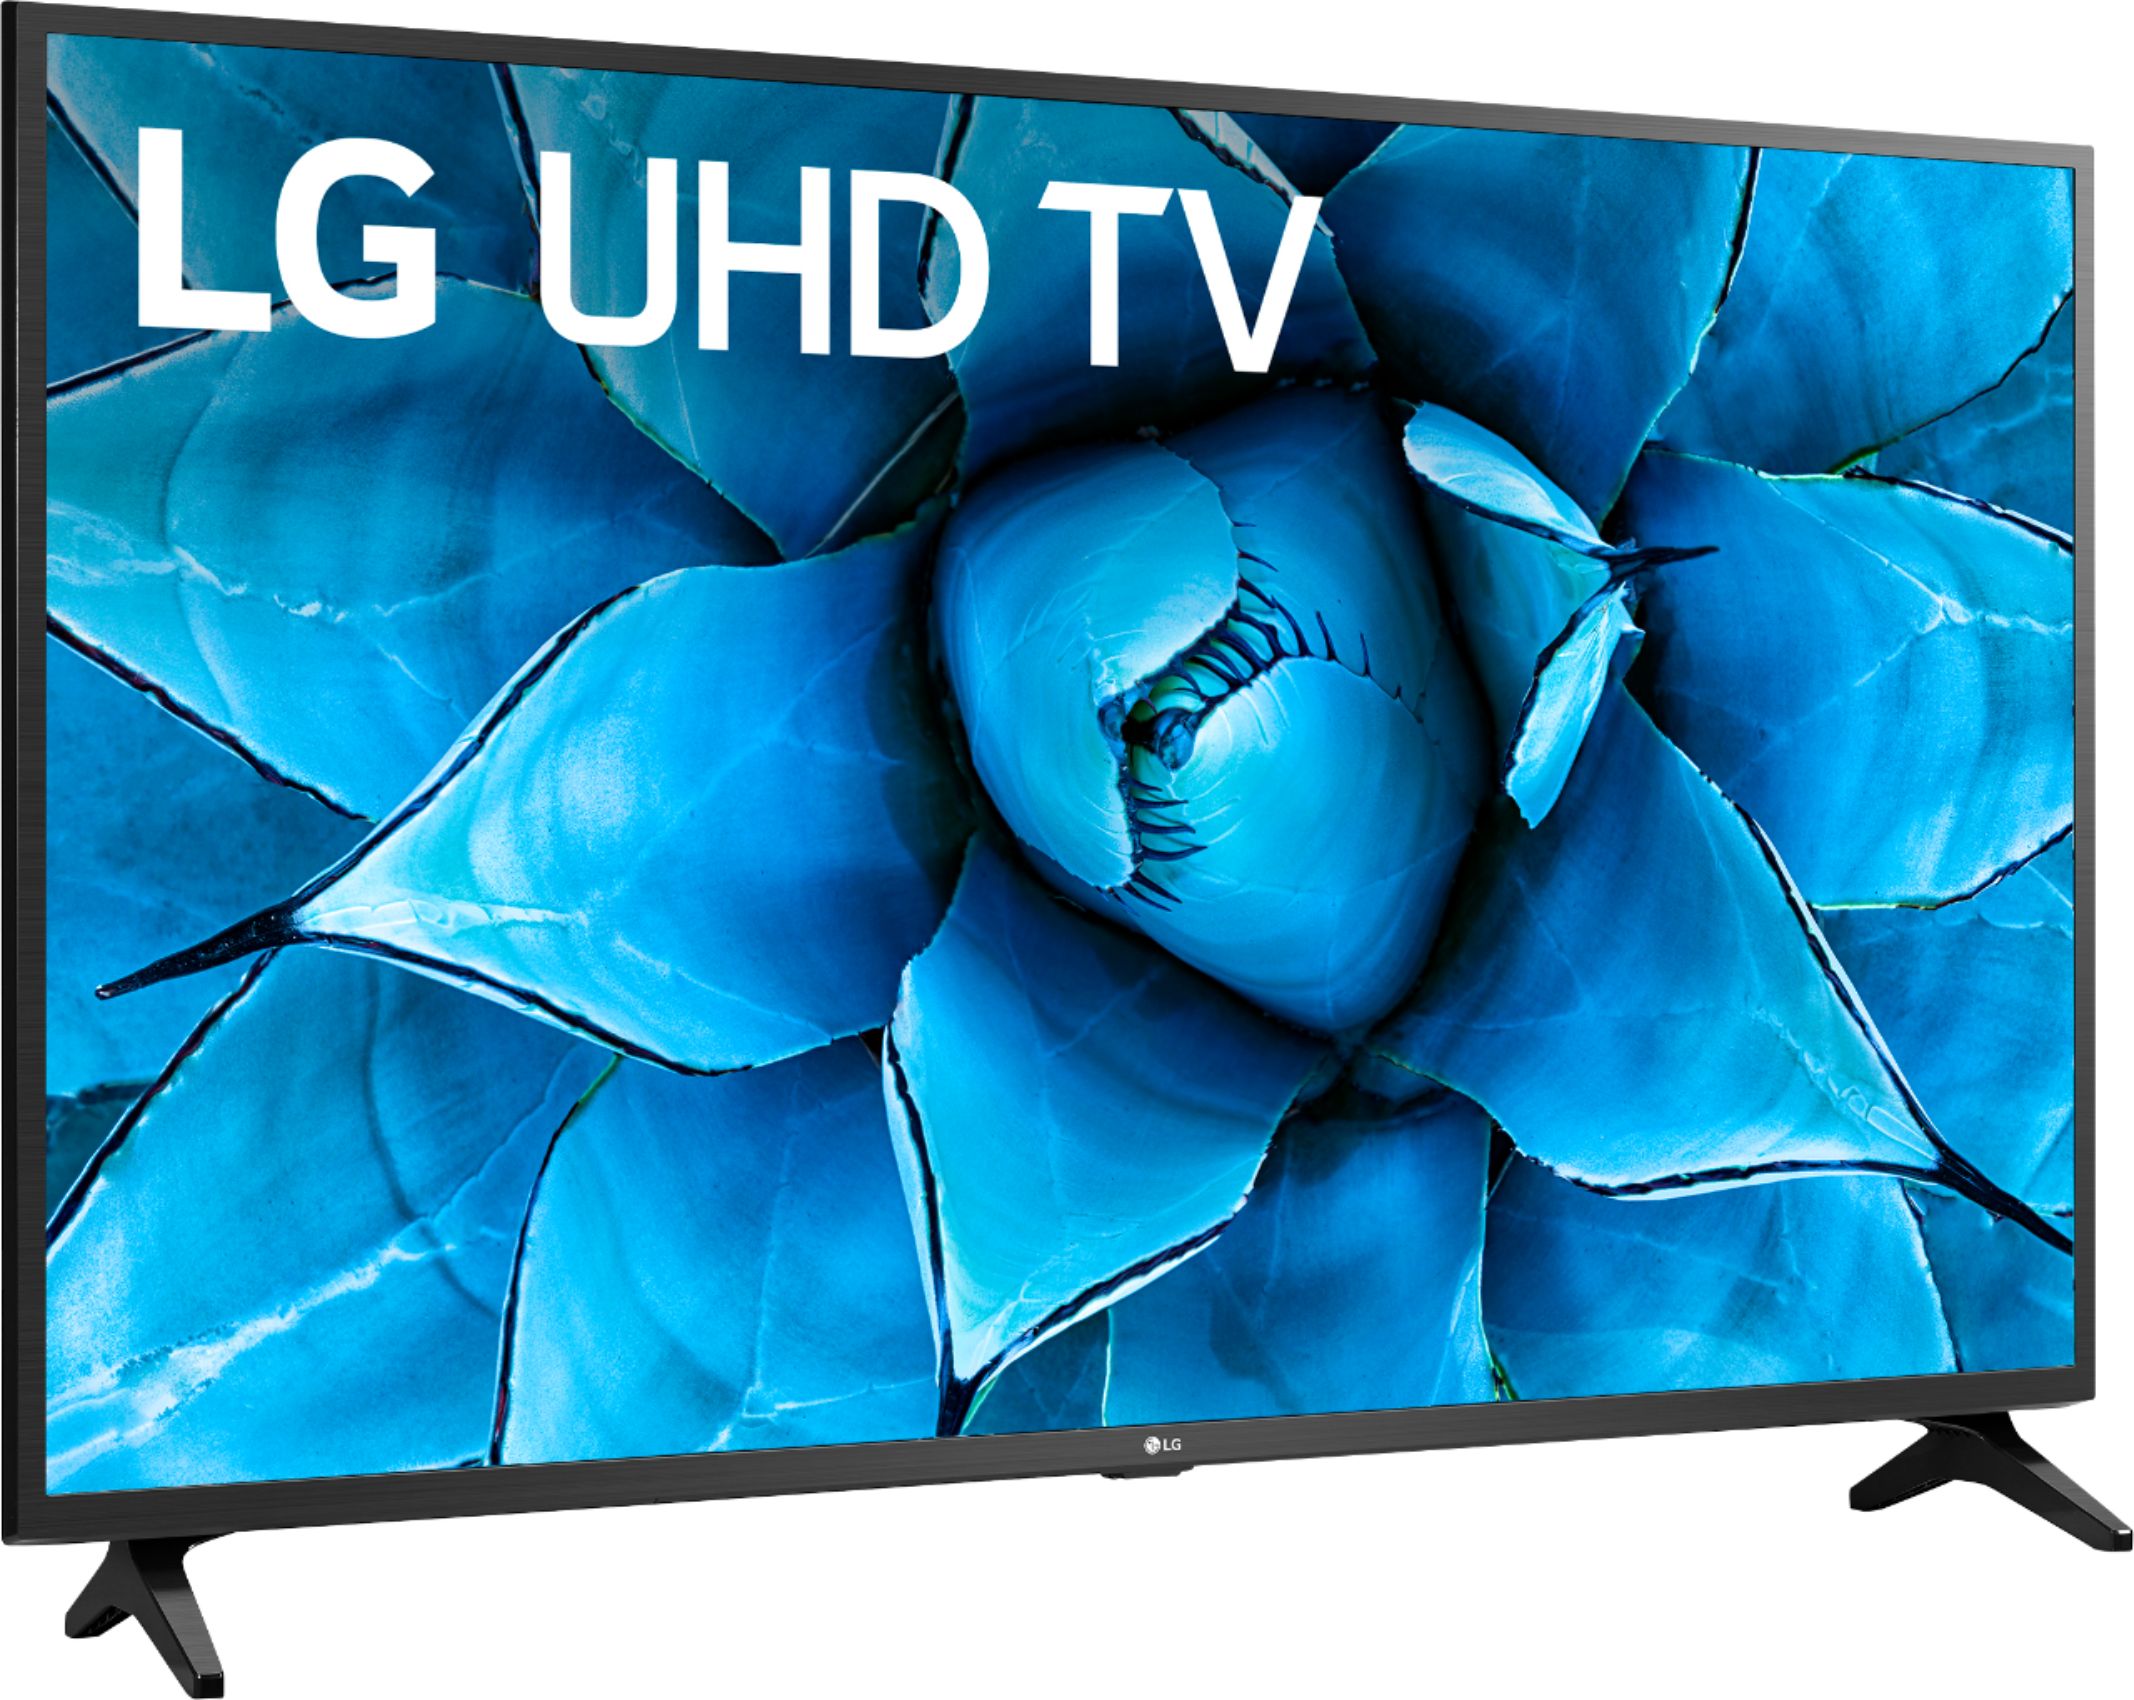 LG Smart TV 55 UR78 4K al mejor precio